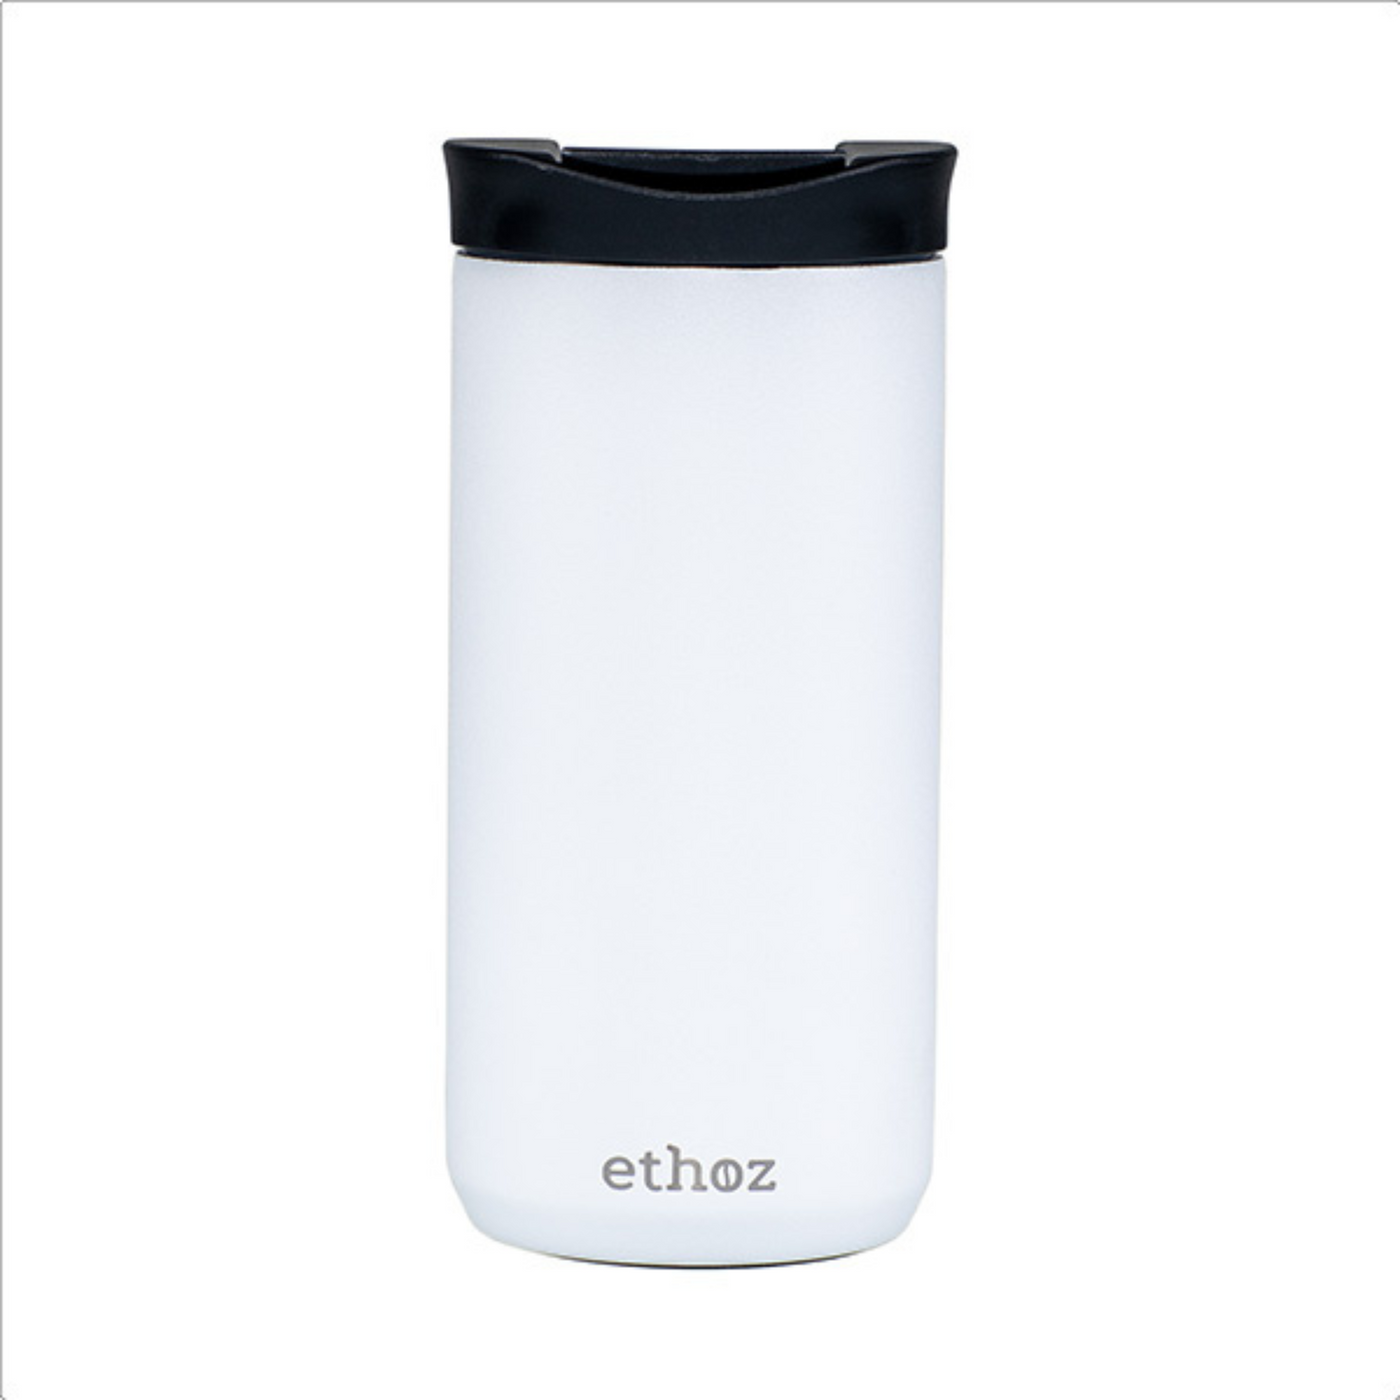 white travel mug showing ethoz brand